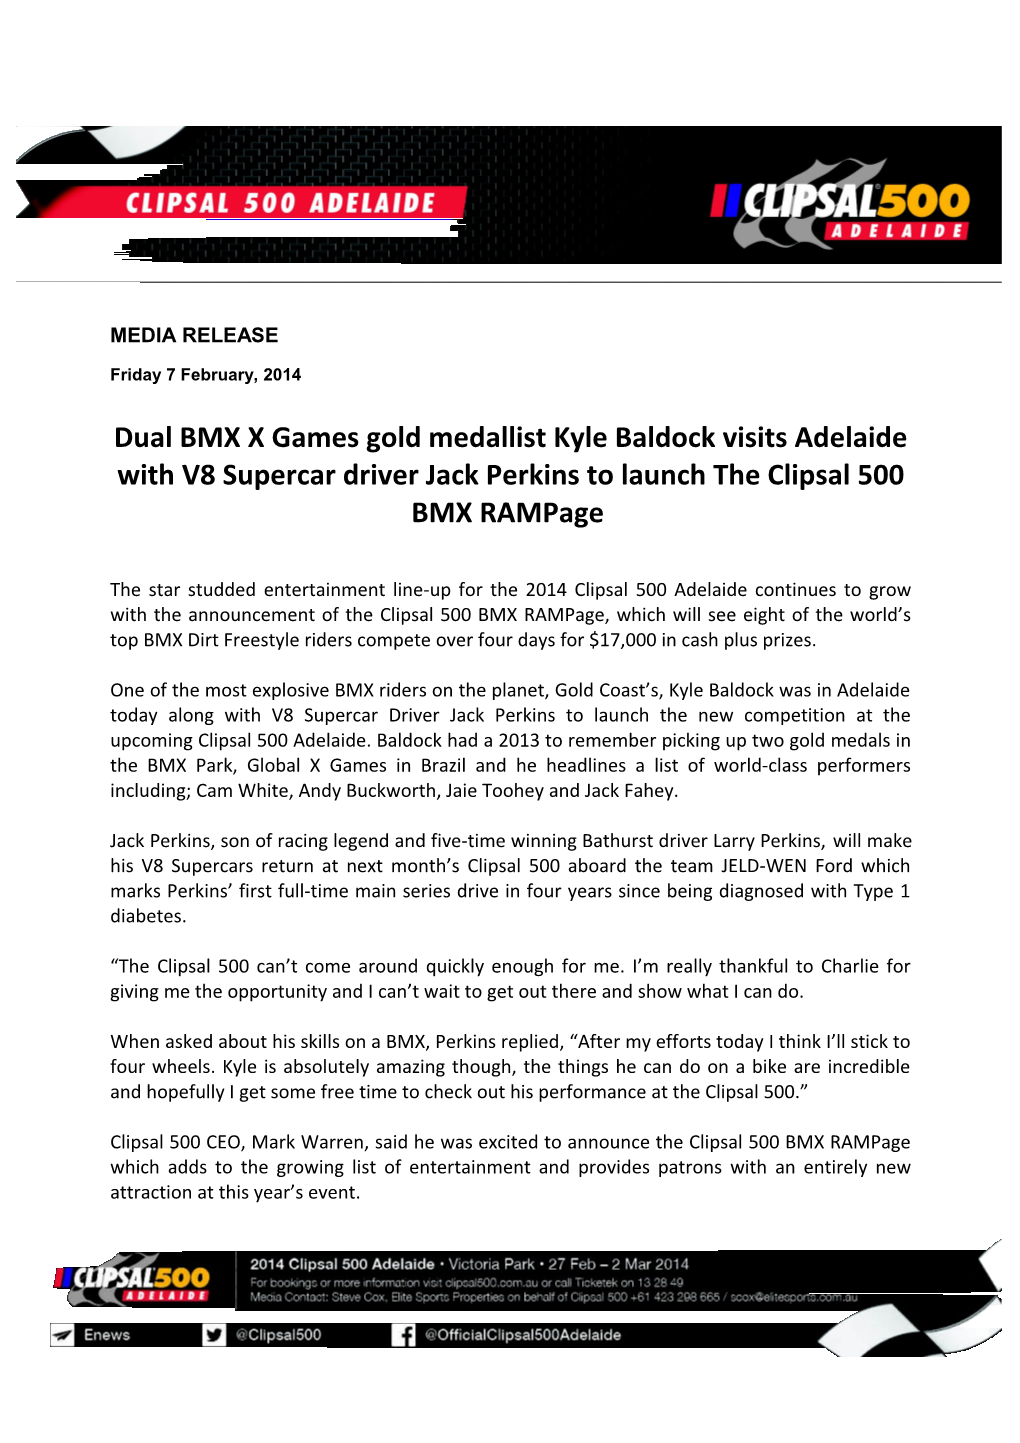 Dual BMX X Games Gold Medallist Kyle Baldock Visits Adelaide with V8 Supercar Driver Jack